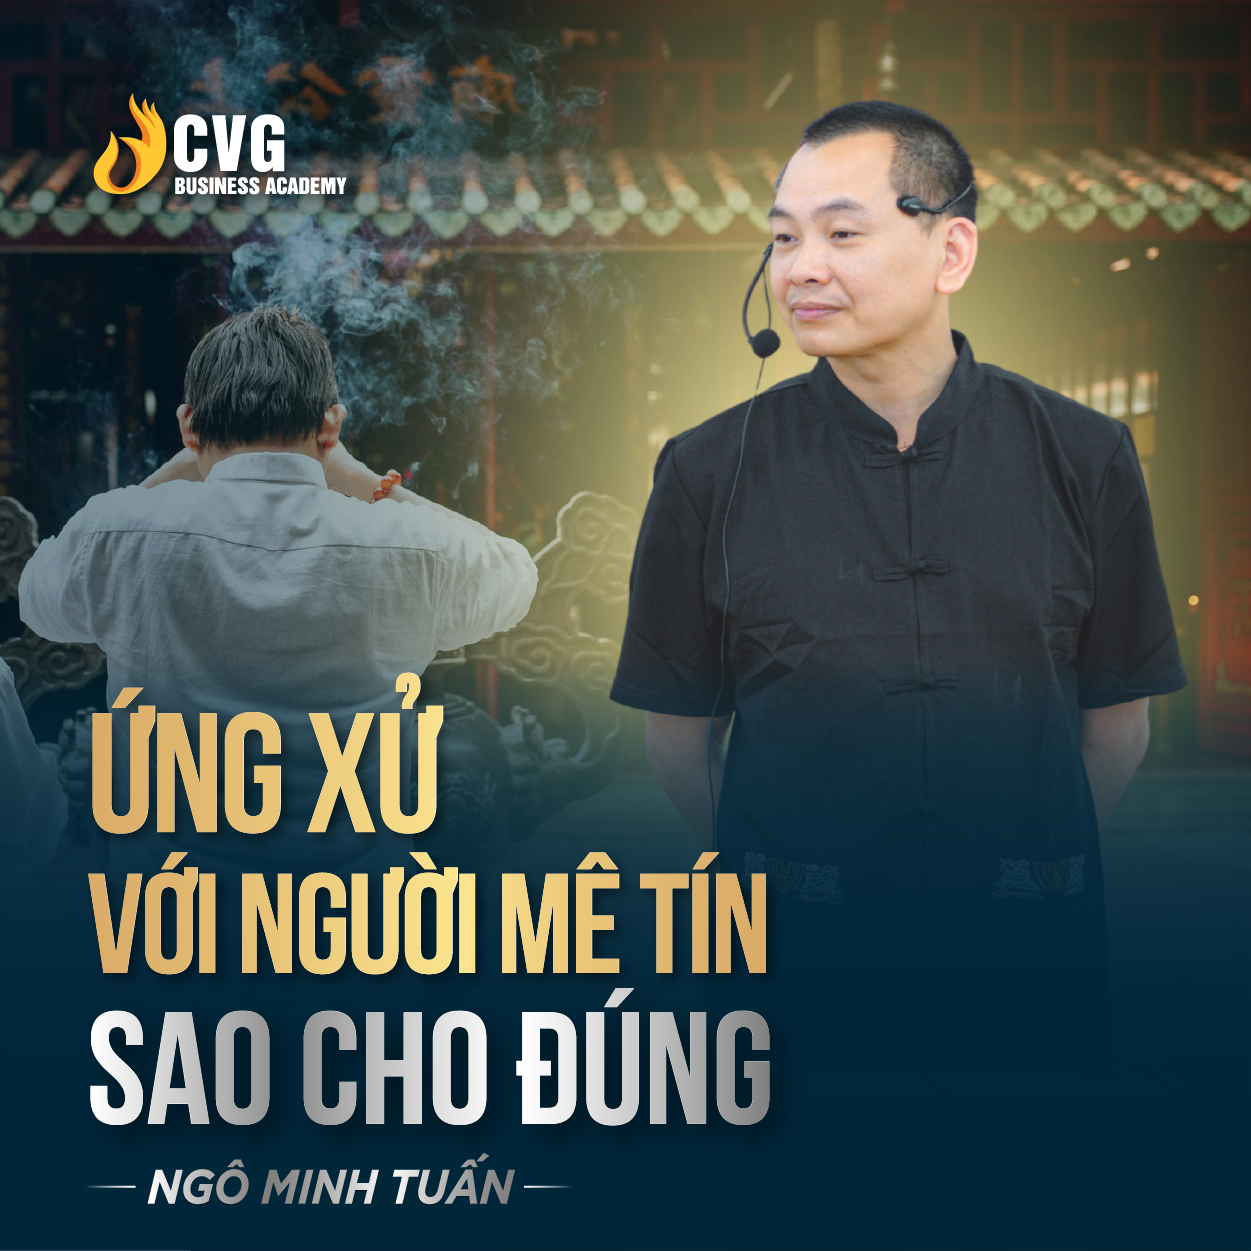 ỨNG XỬ VỚI NGƯỜI MÊ TÍN SAO CHO ĐÚNG | Ngô Minh Tuấn | Học Viện CEO Việt Nam Global